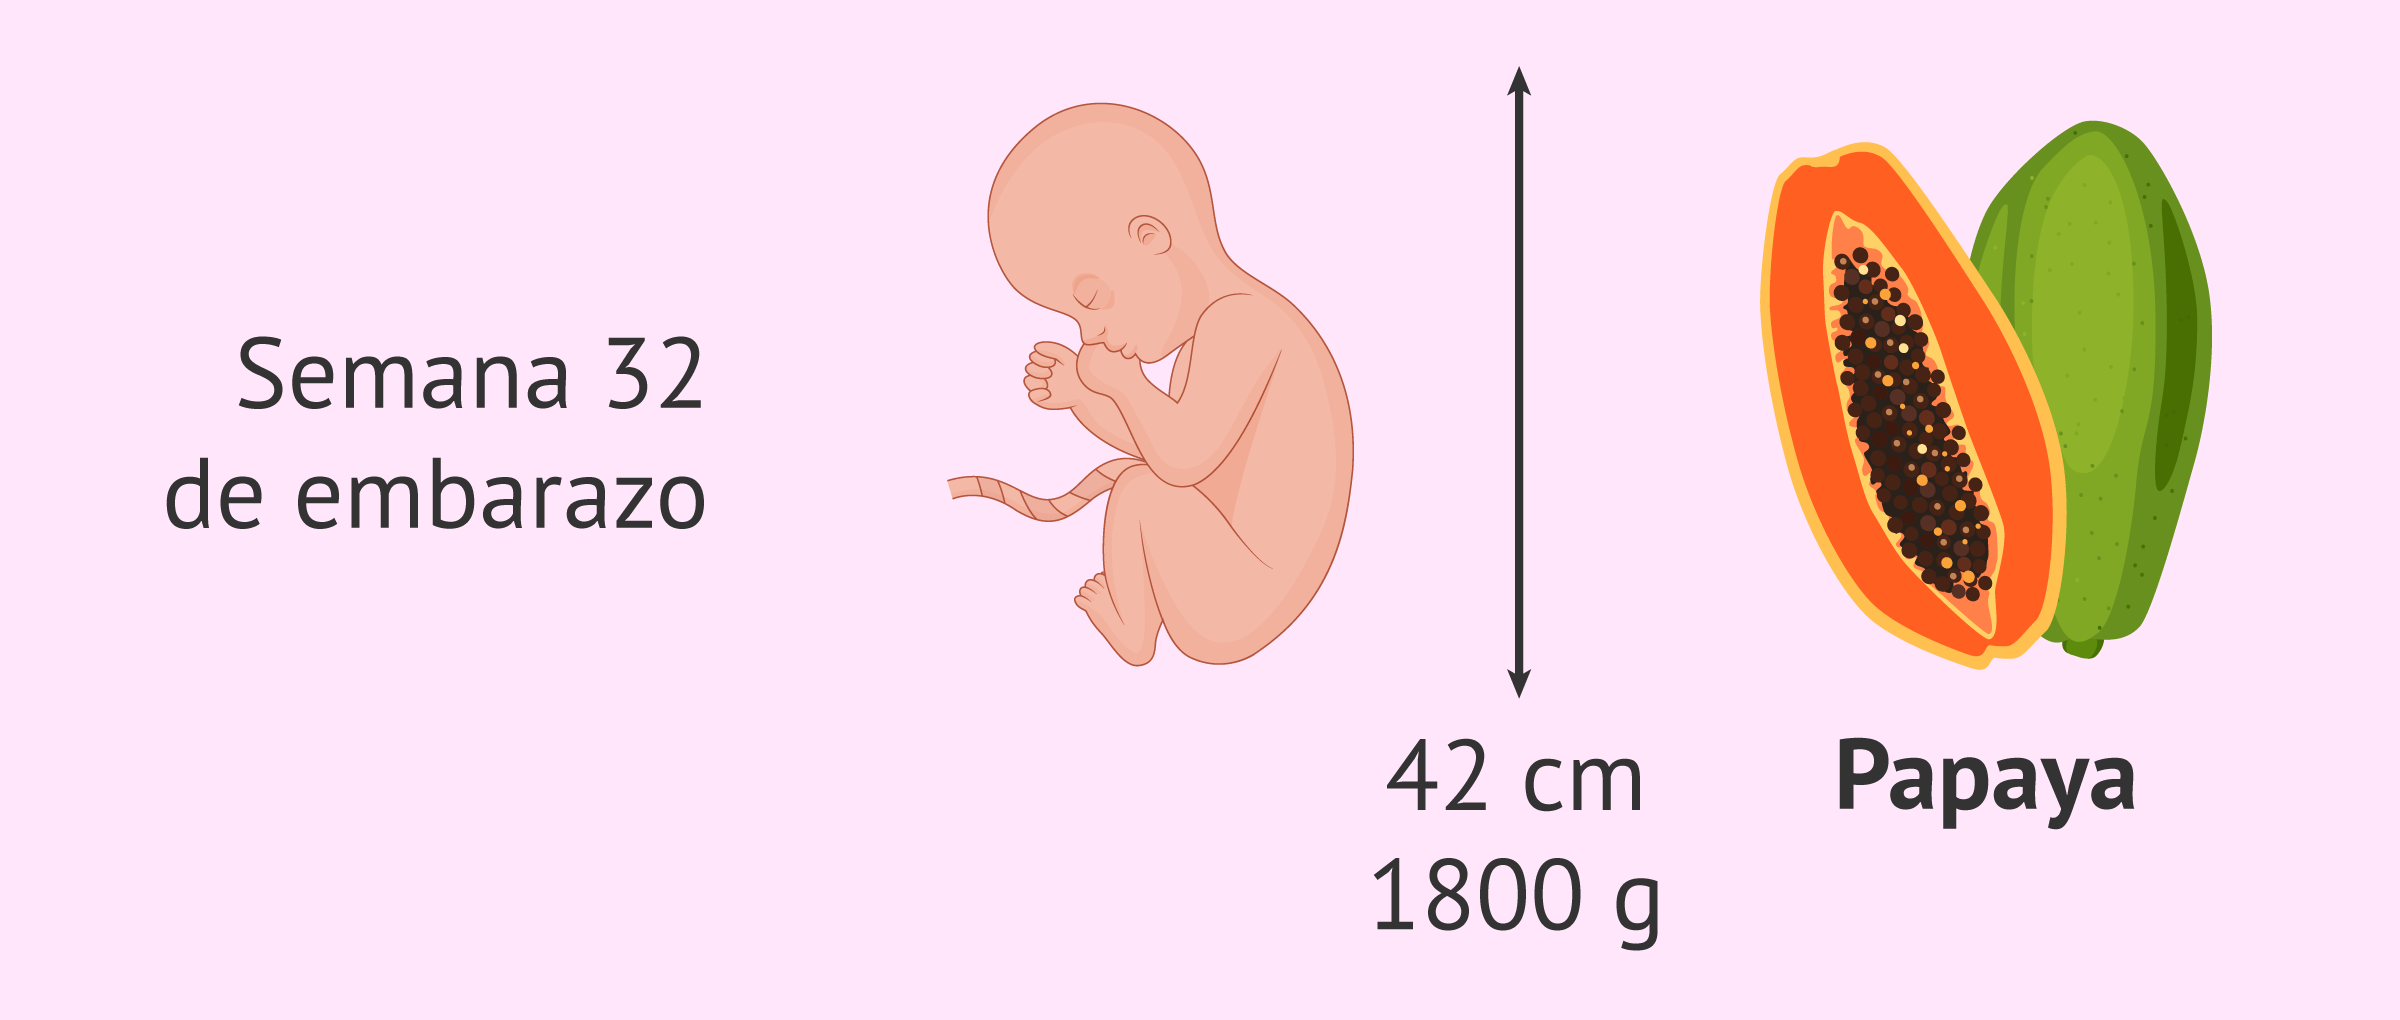 Mansedumbre Aceptado blusa Tamaño del bebé en la semana 32 de embarazo